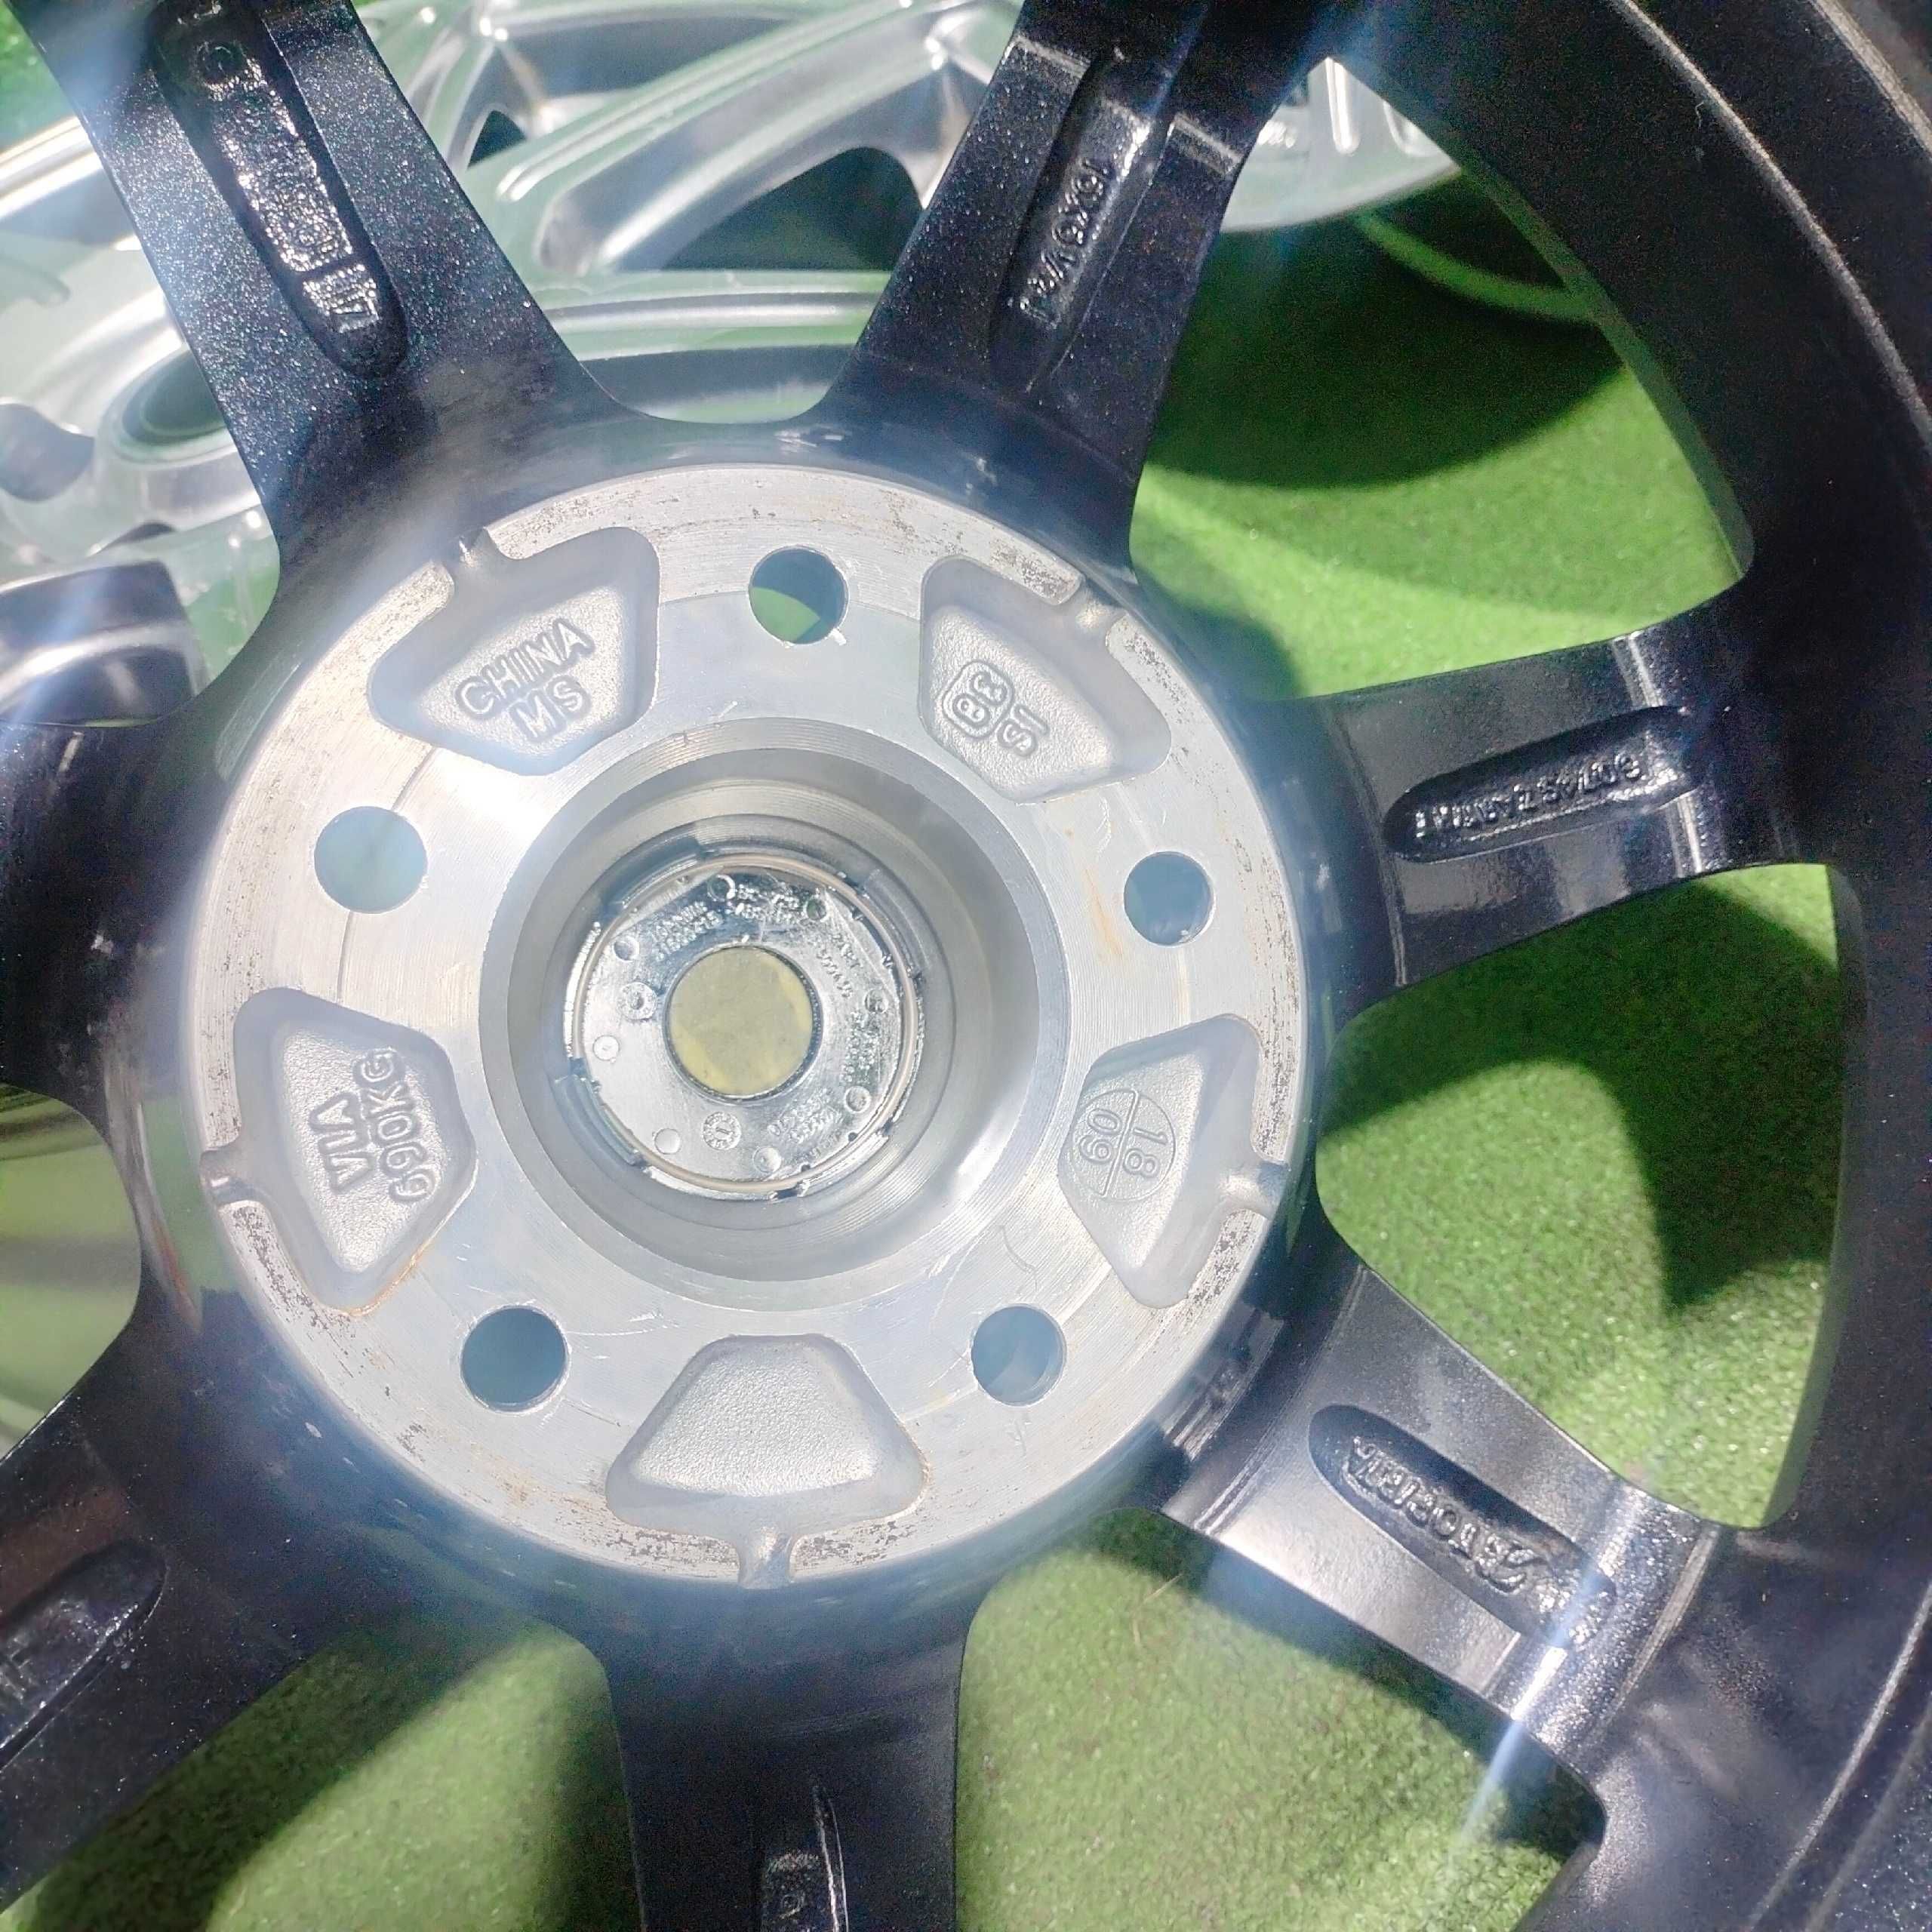 Продам Фирменный литые диски Bridgestone ZART R16 6,5J 5/114,3 ЦО 73,1